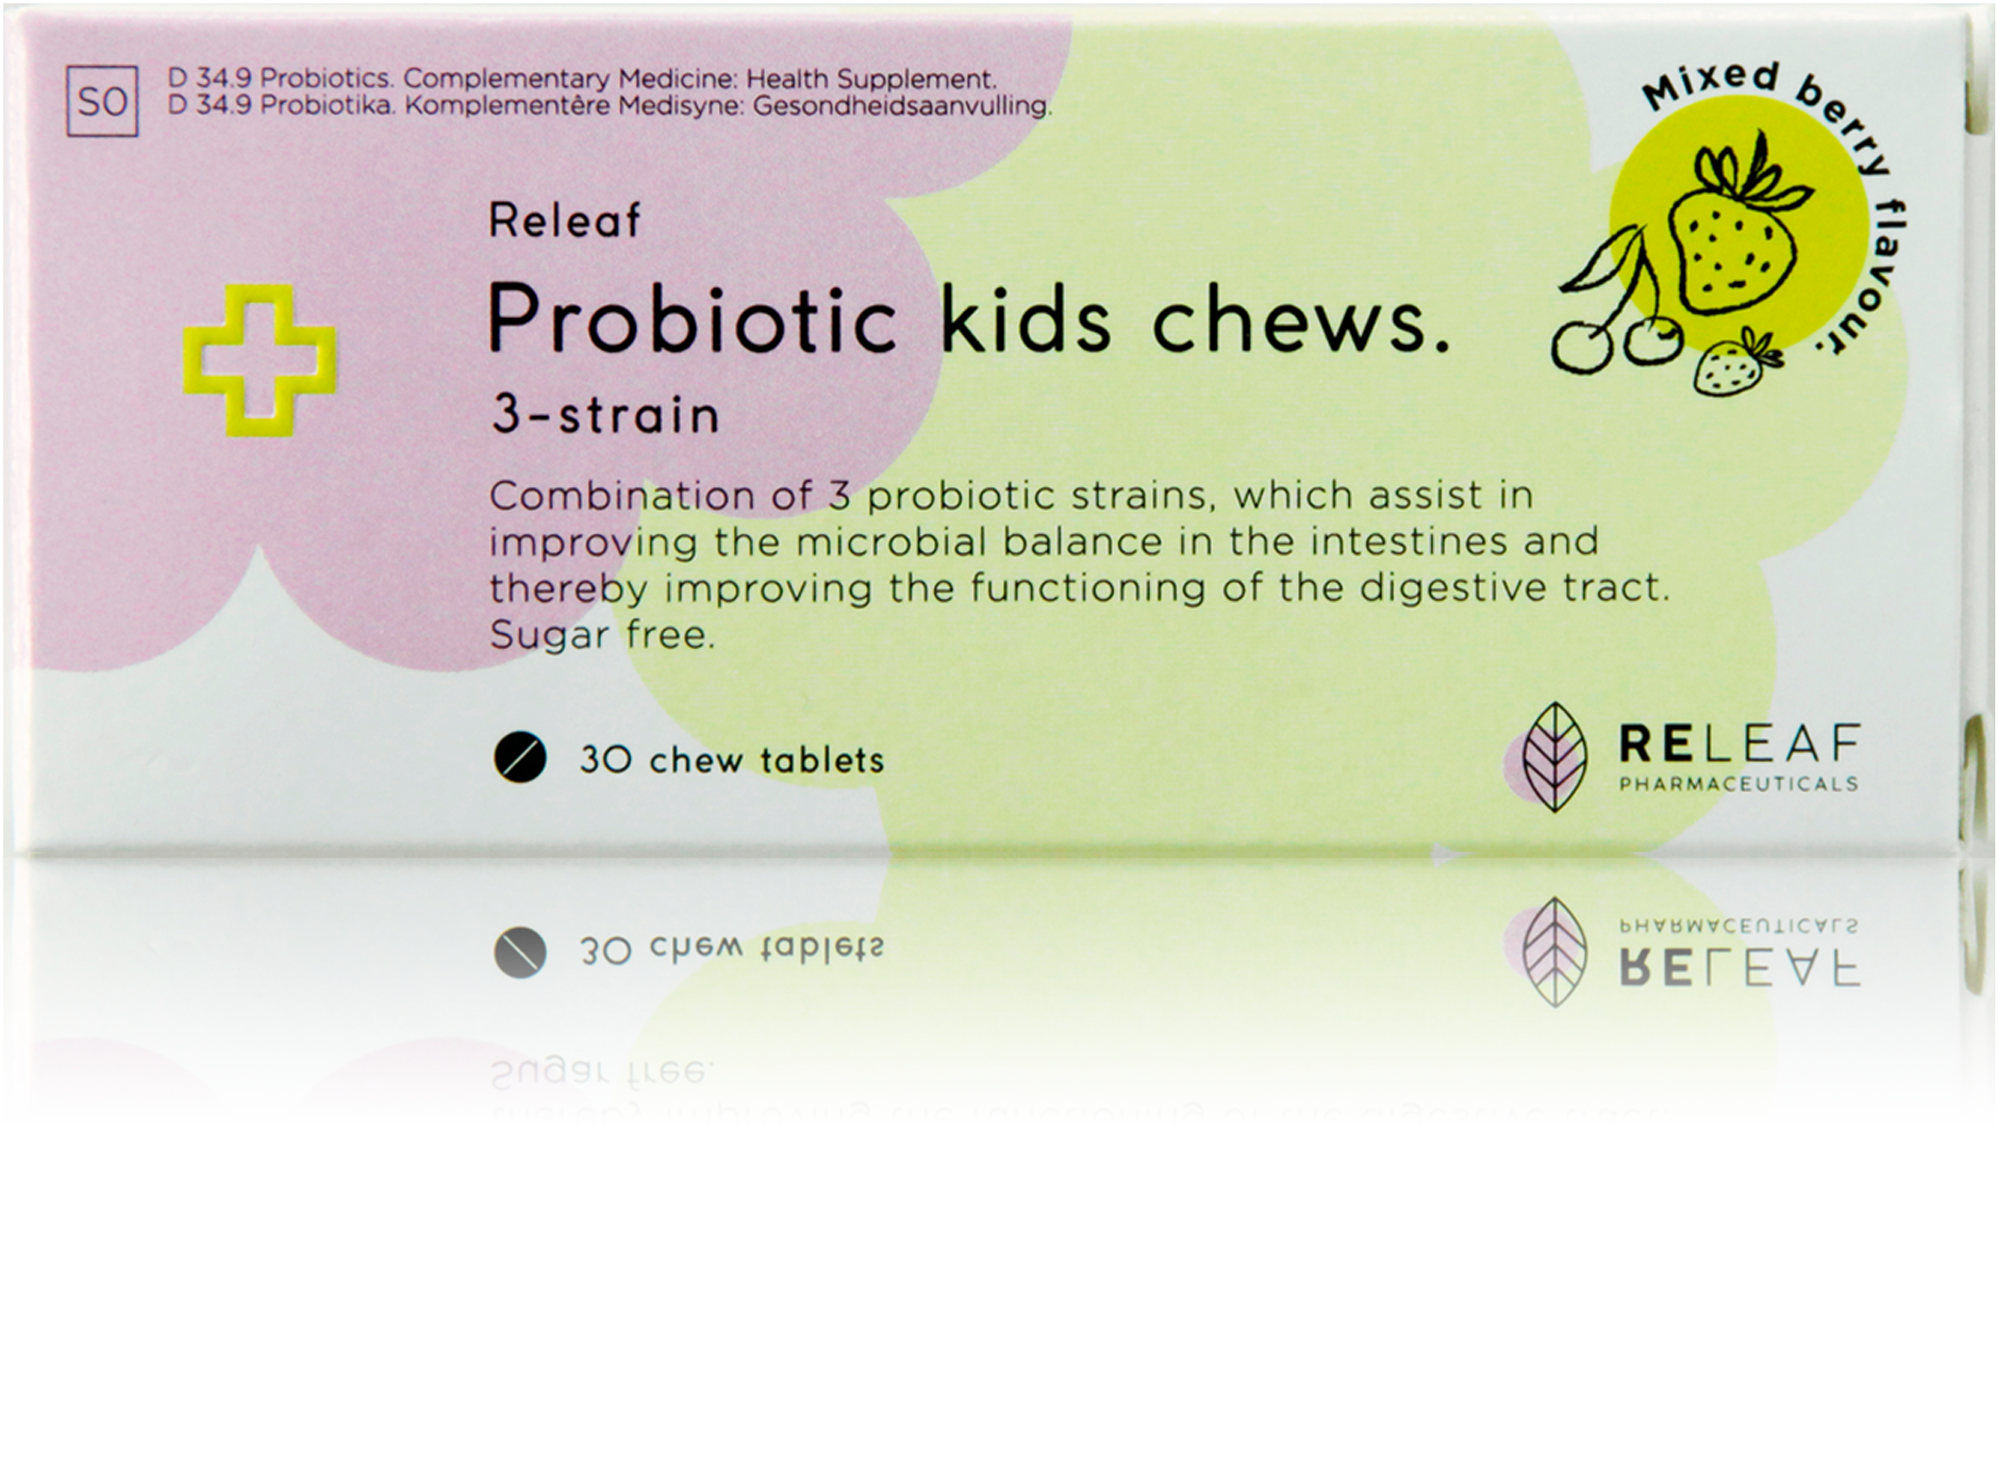 Pack_Probiotic-Kids-chews_30.png